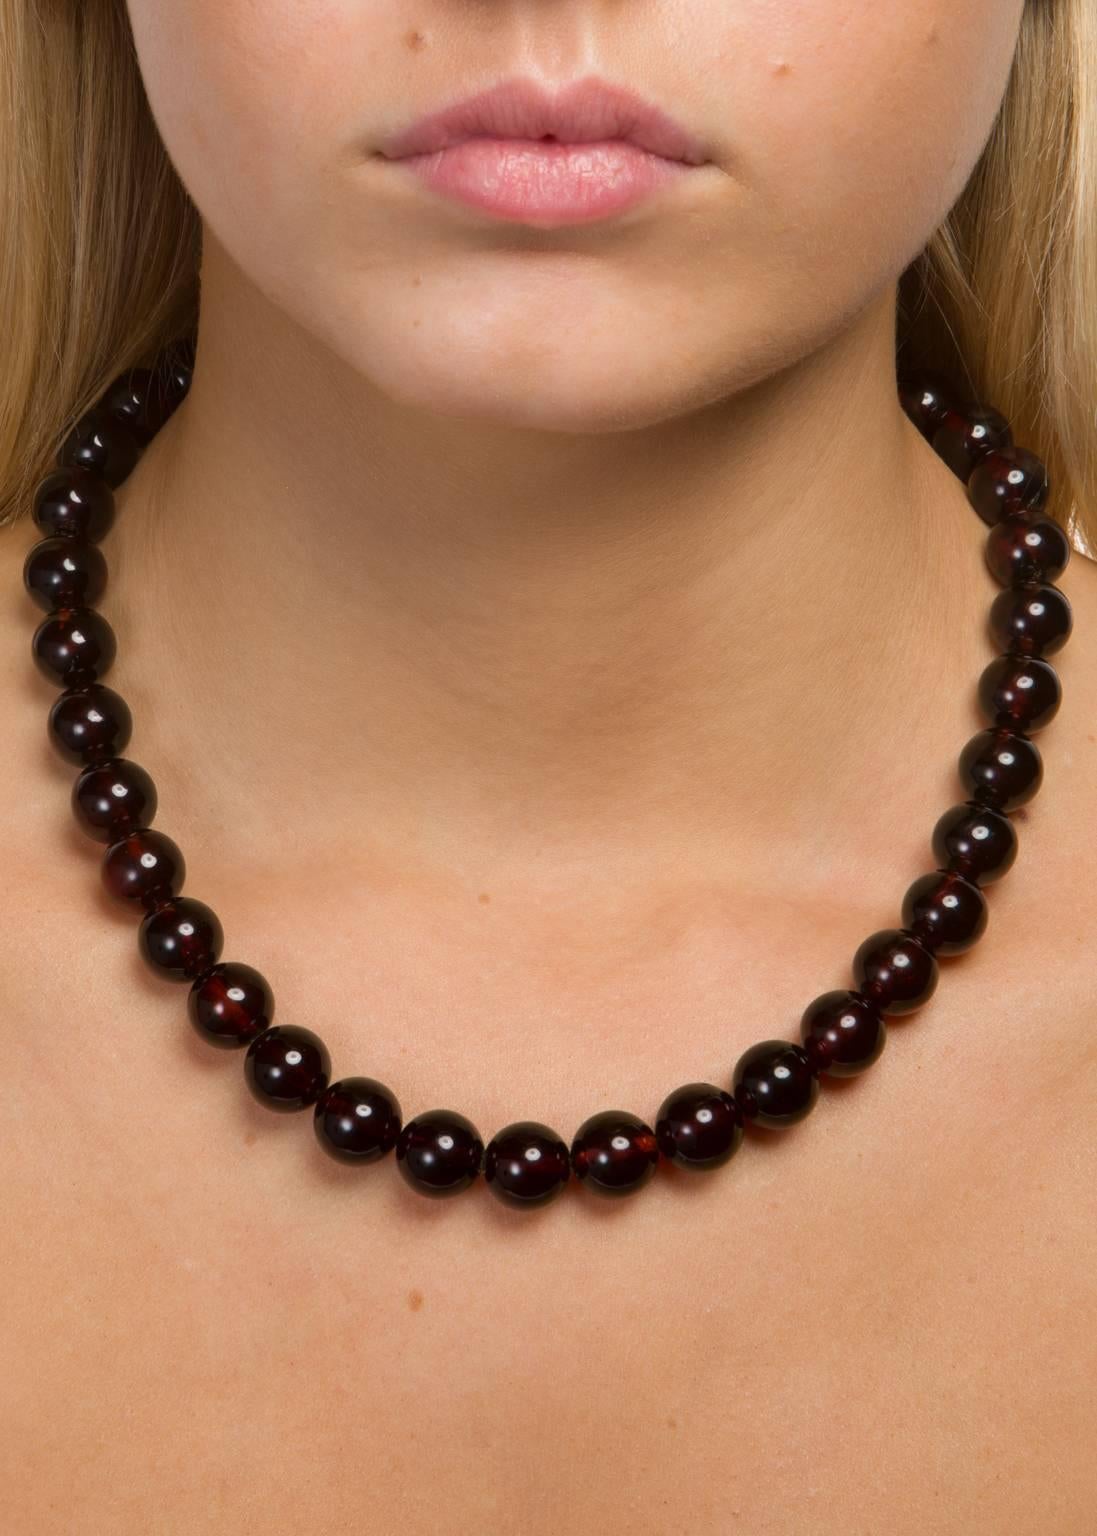 cherry amber beads